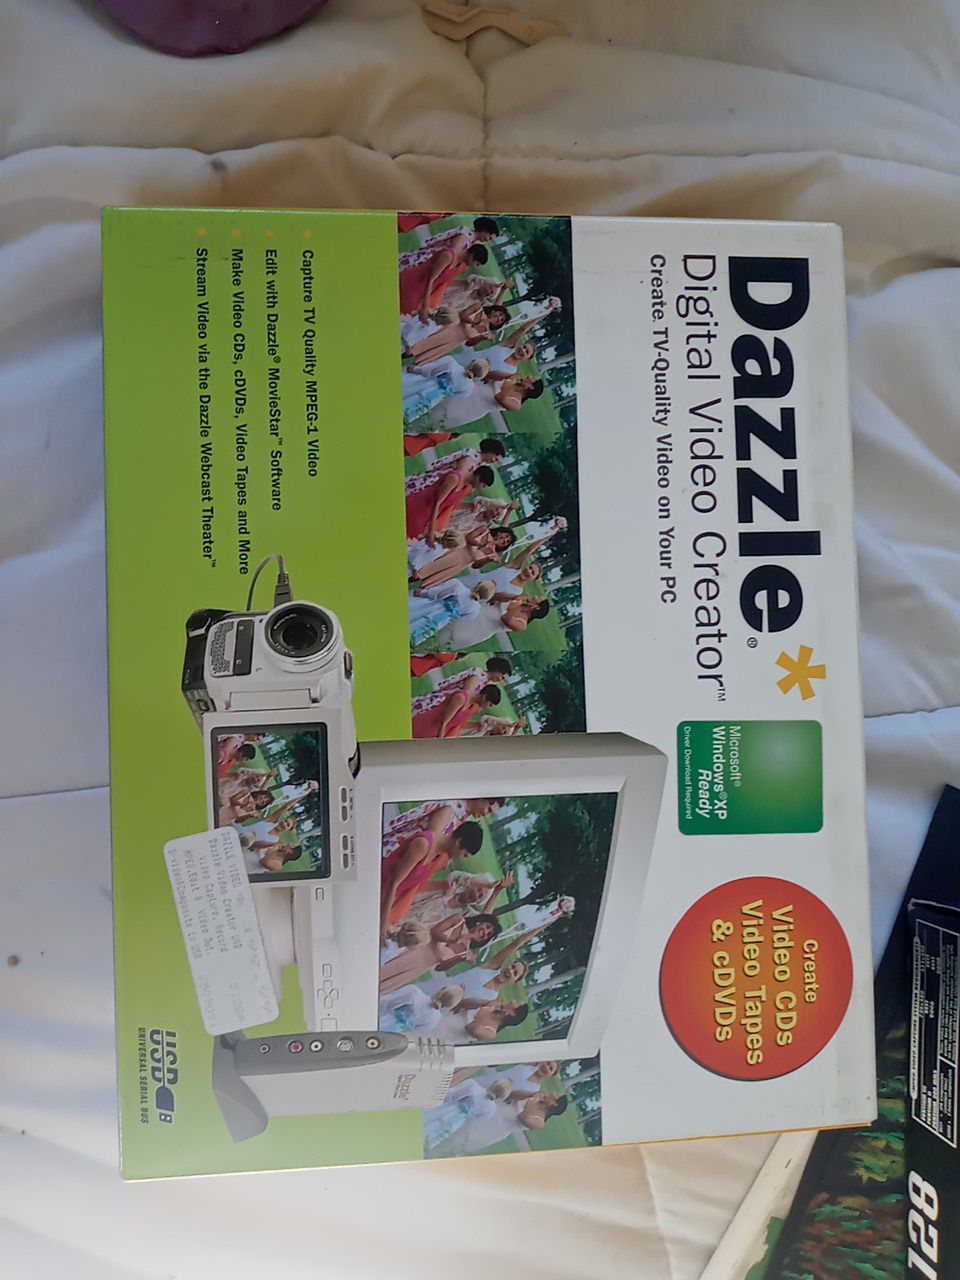 New in box dazzle digital video creator